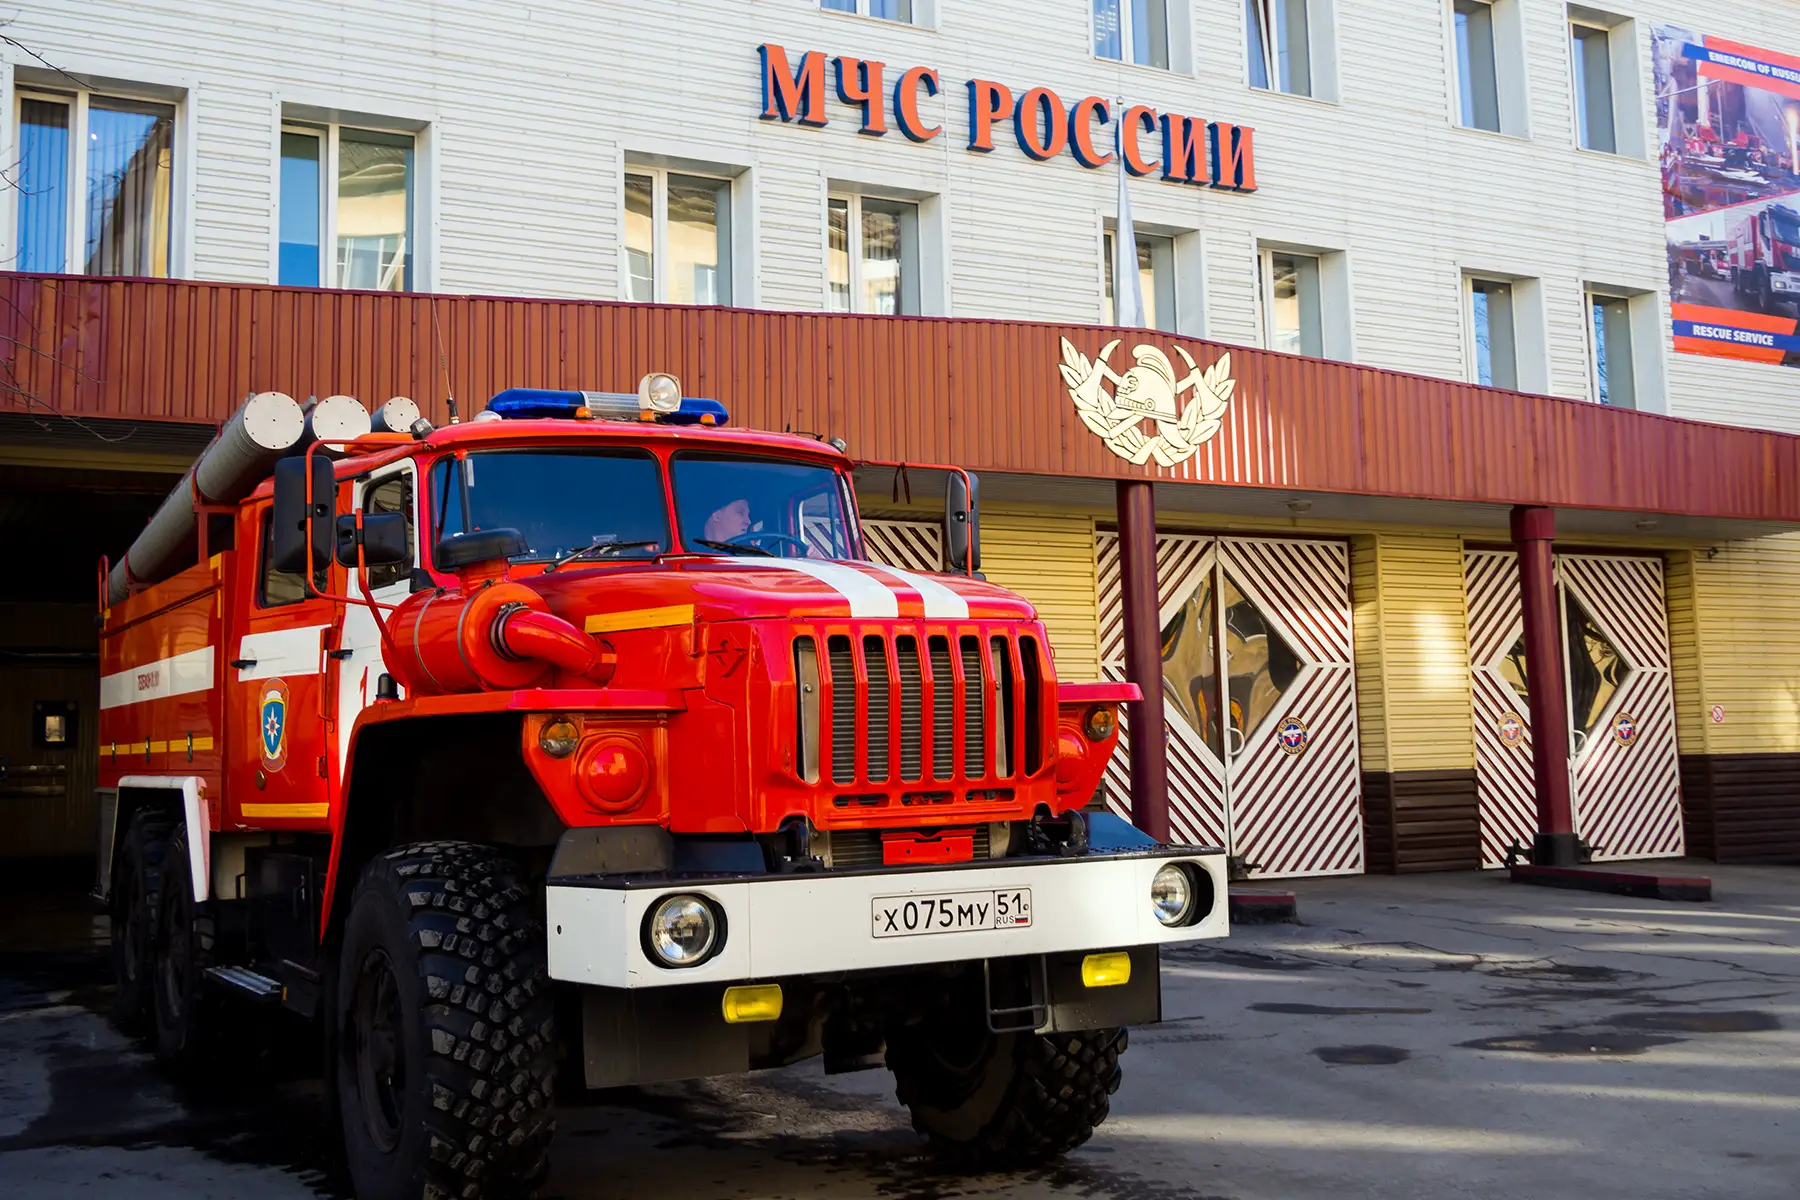 Fire truck in Murmansk